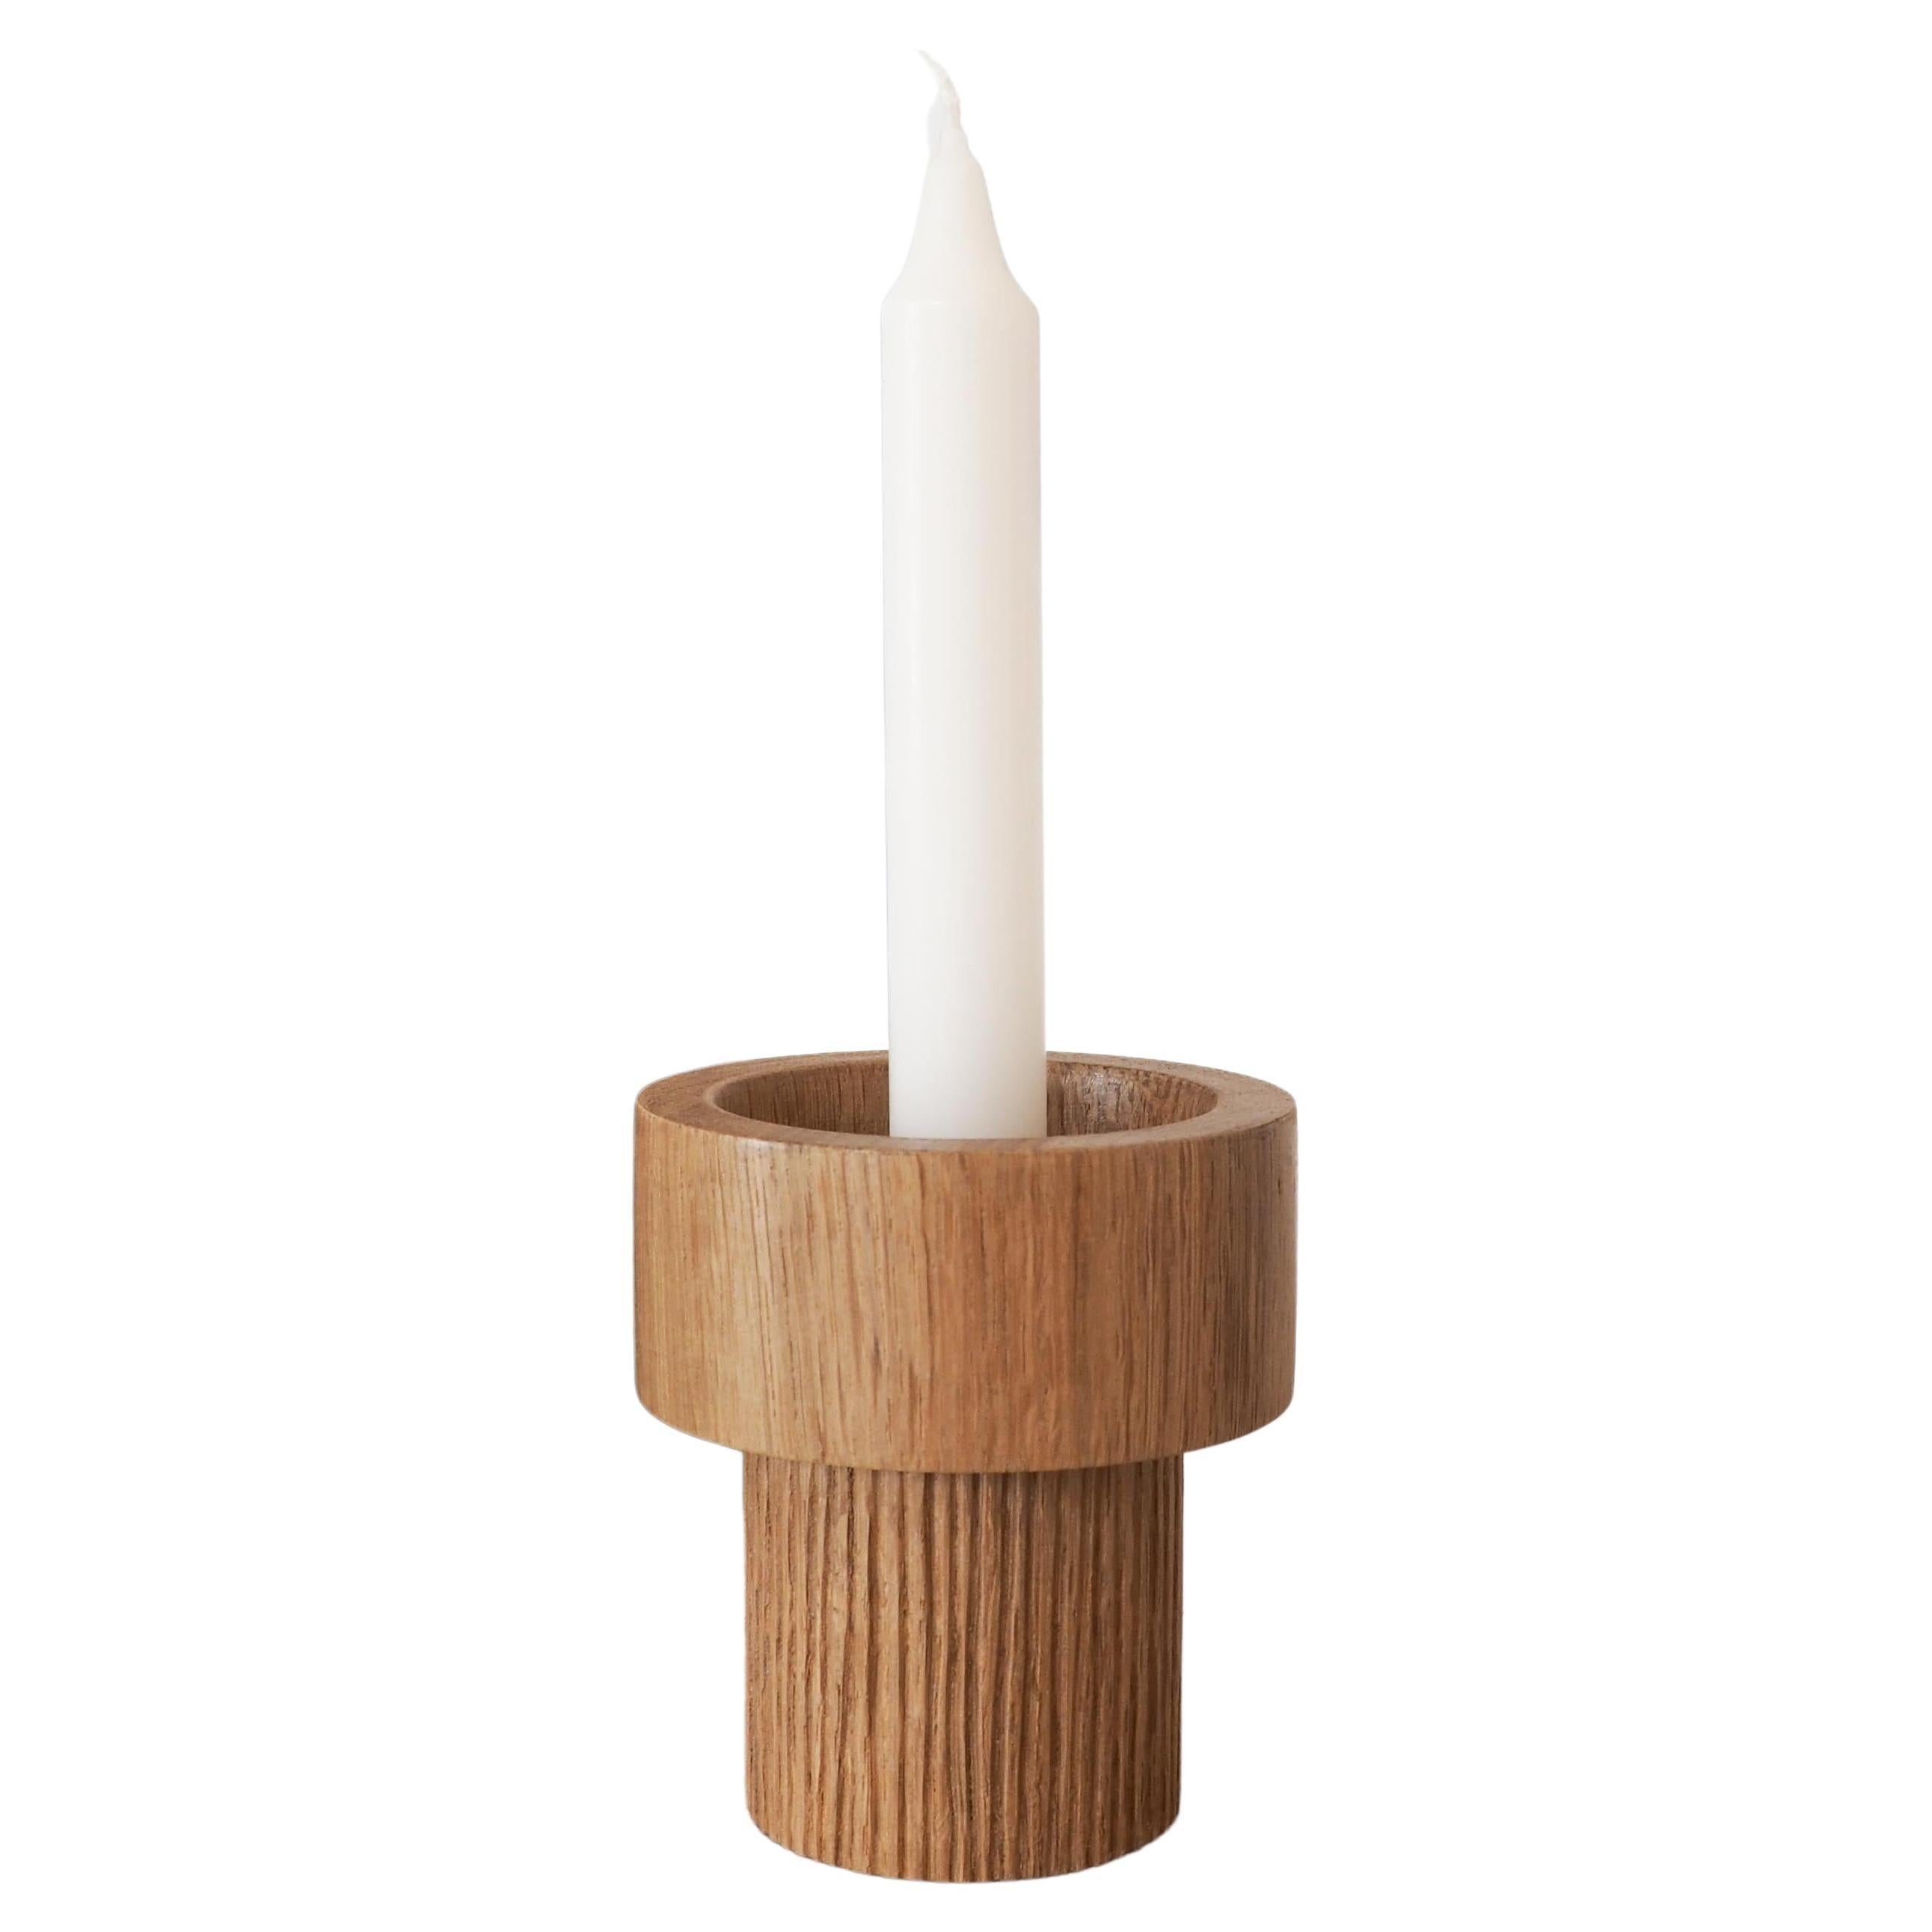 LE RAYÉ candlestick, oak wood, handmade in France, OROS Editiion